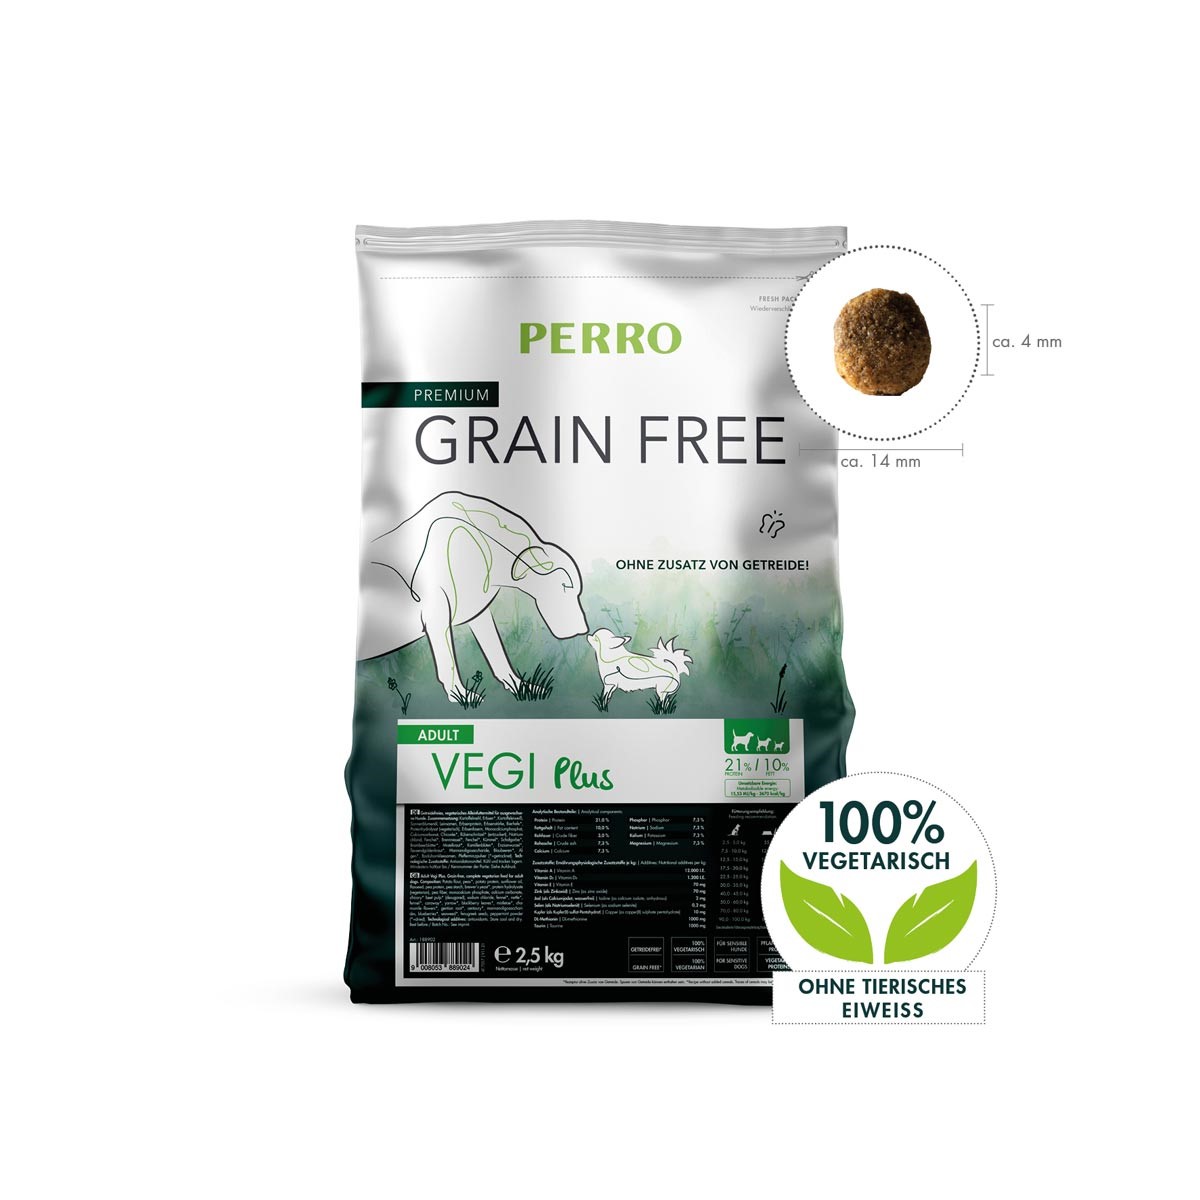 PERRO Grain Free Adult Vegi Plus 10kg